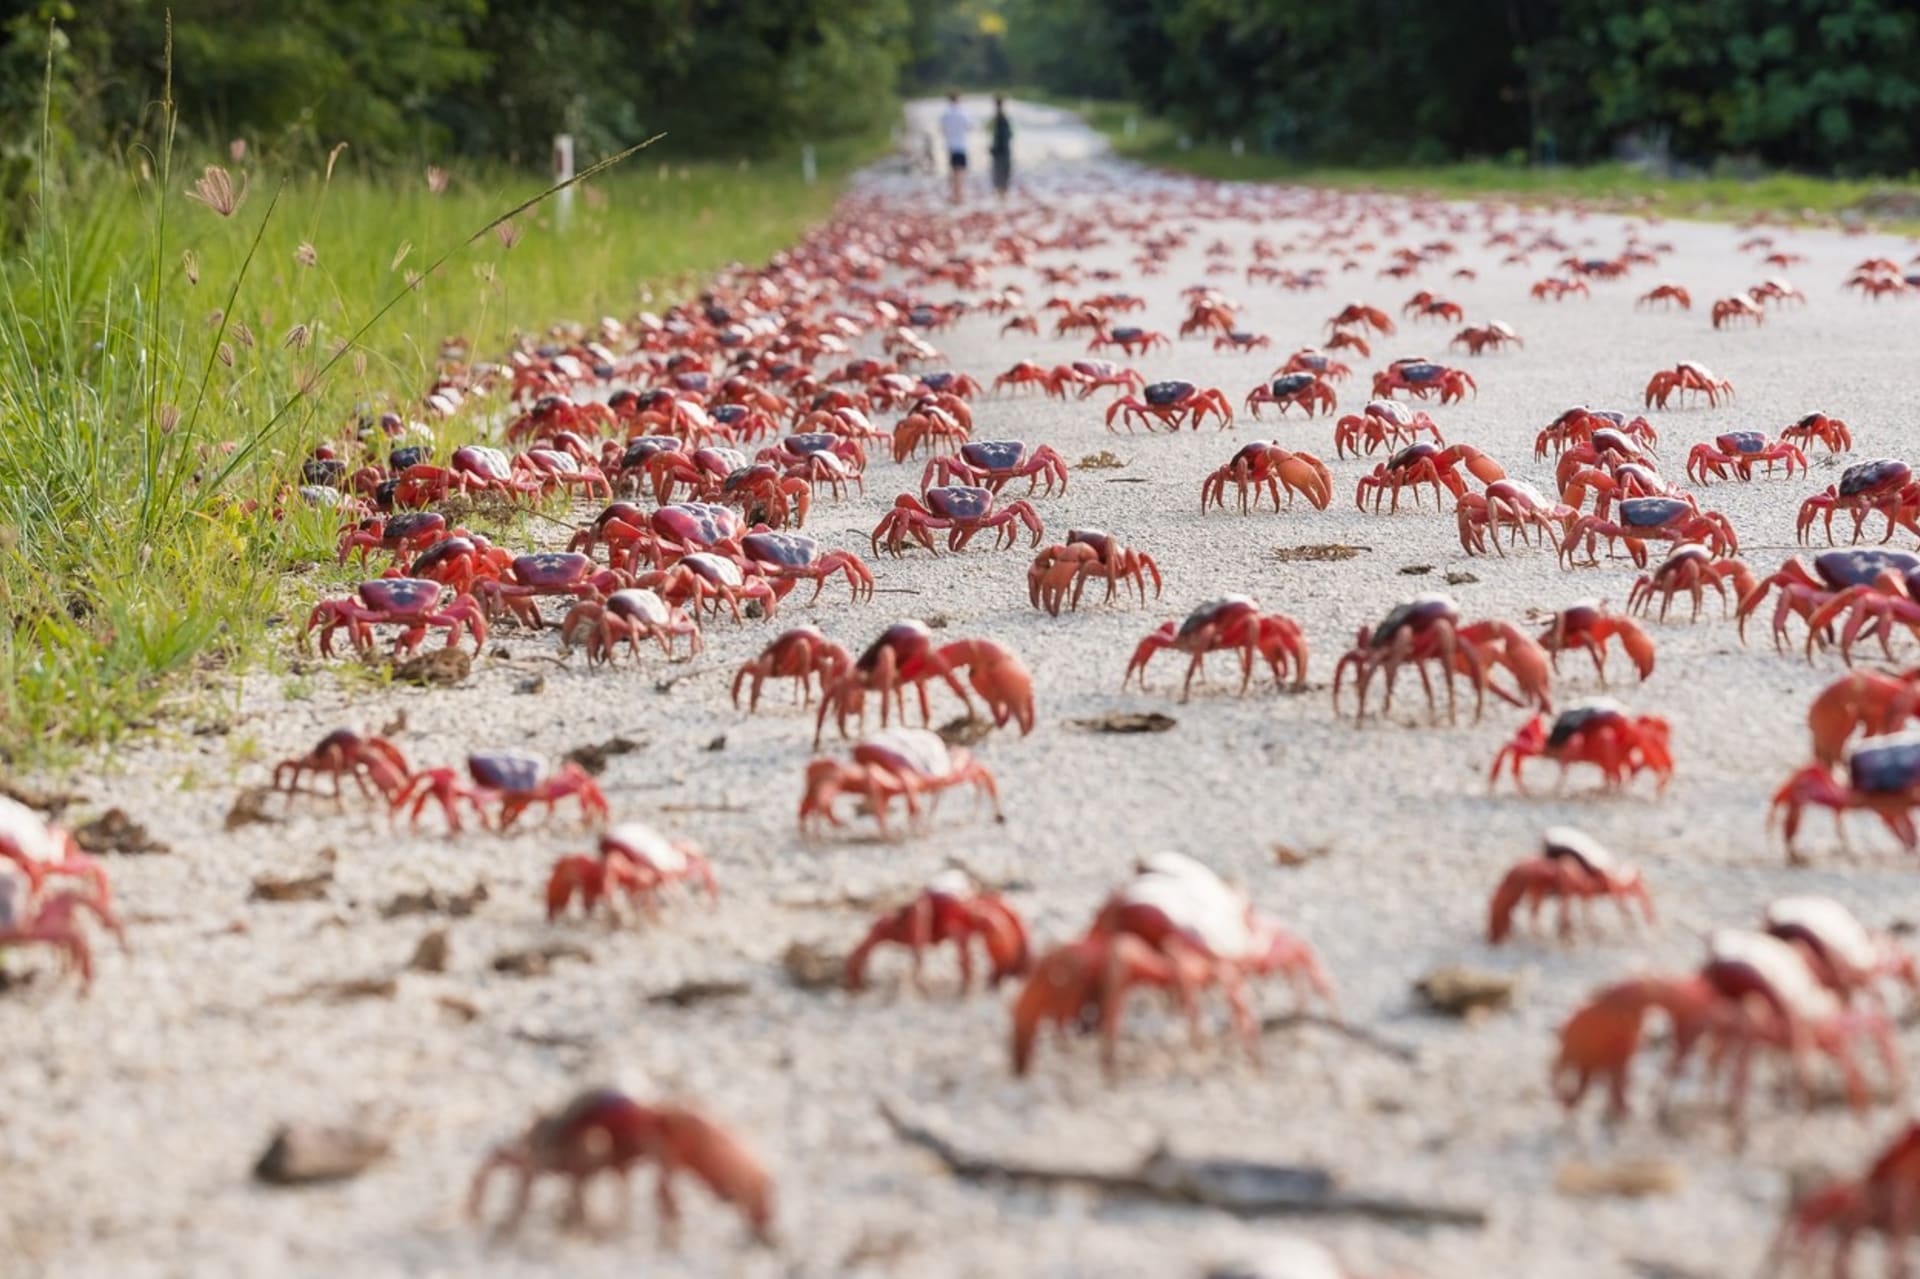 Vánoční ostrov se chystá na migraci desítek milionů krabů k pobřeží.